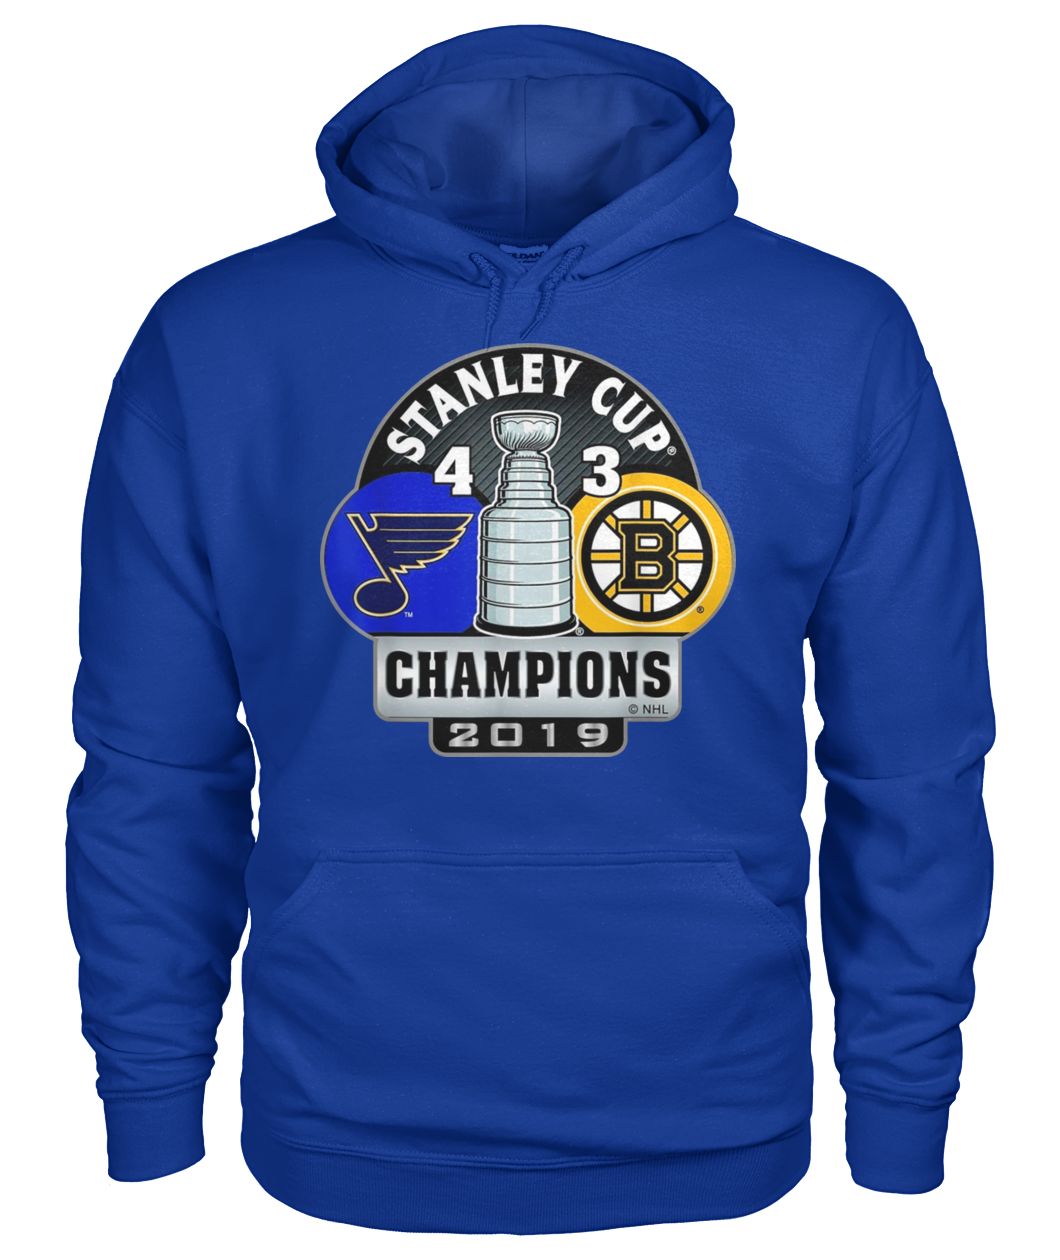 Stanley cup champions st louis blues 4 3 boston bruins 2019 gildan hoodie